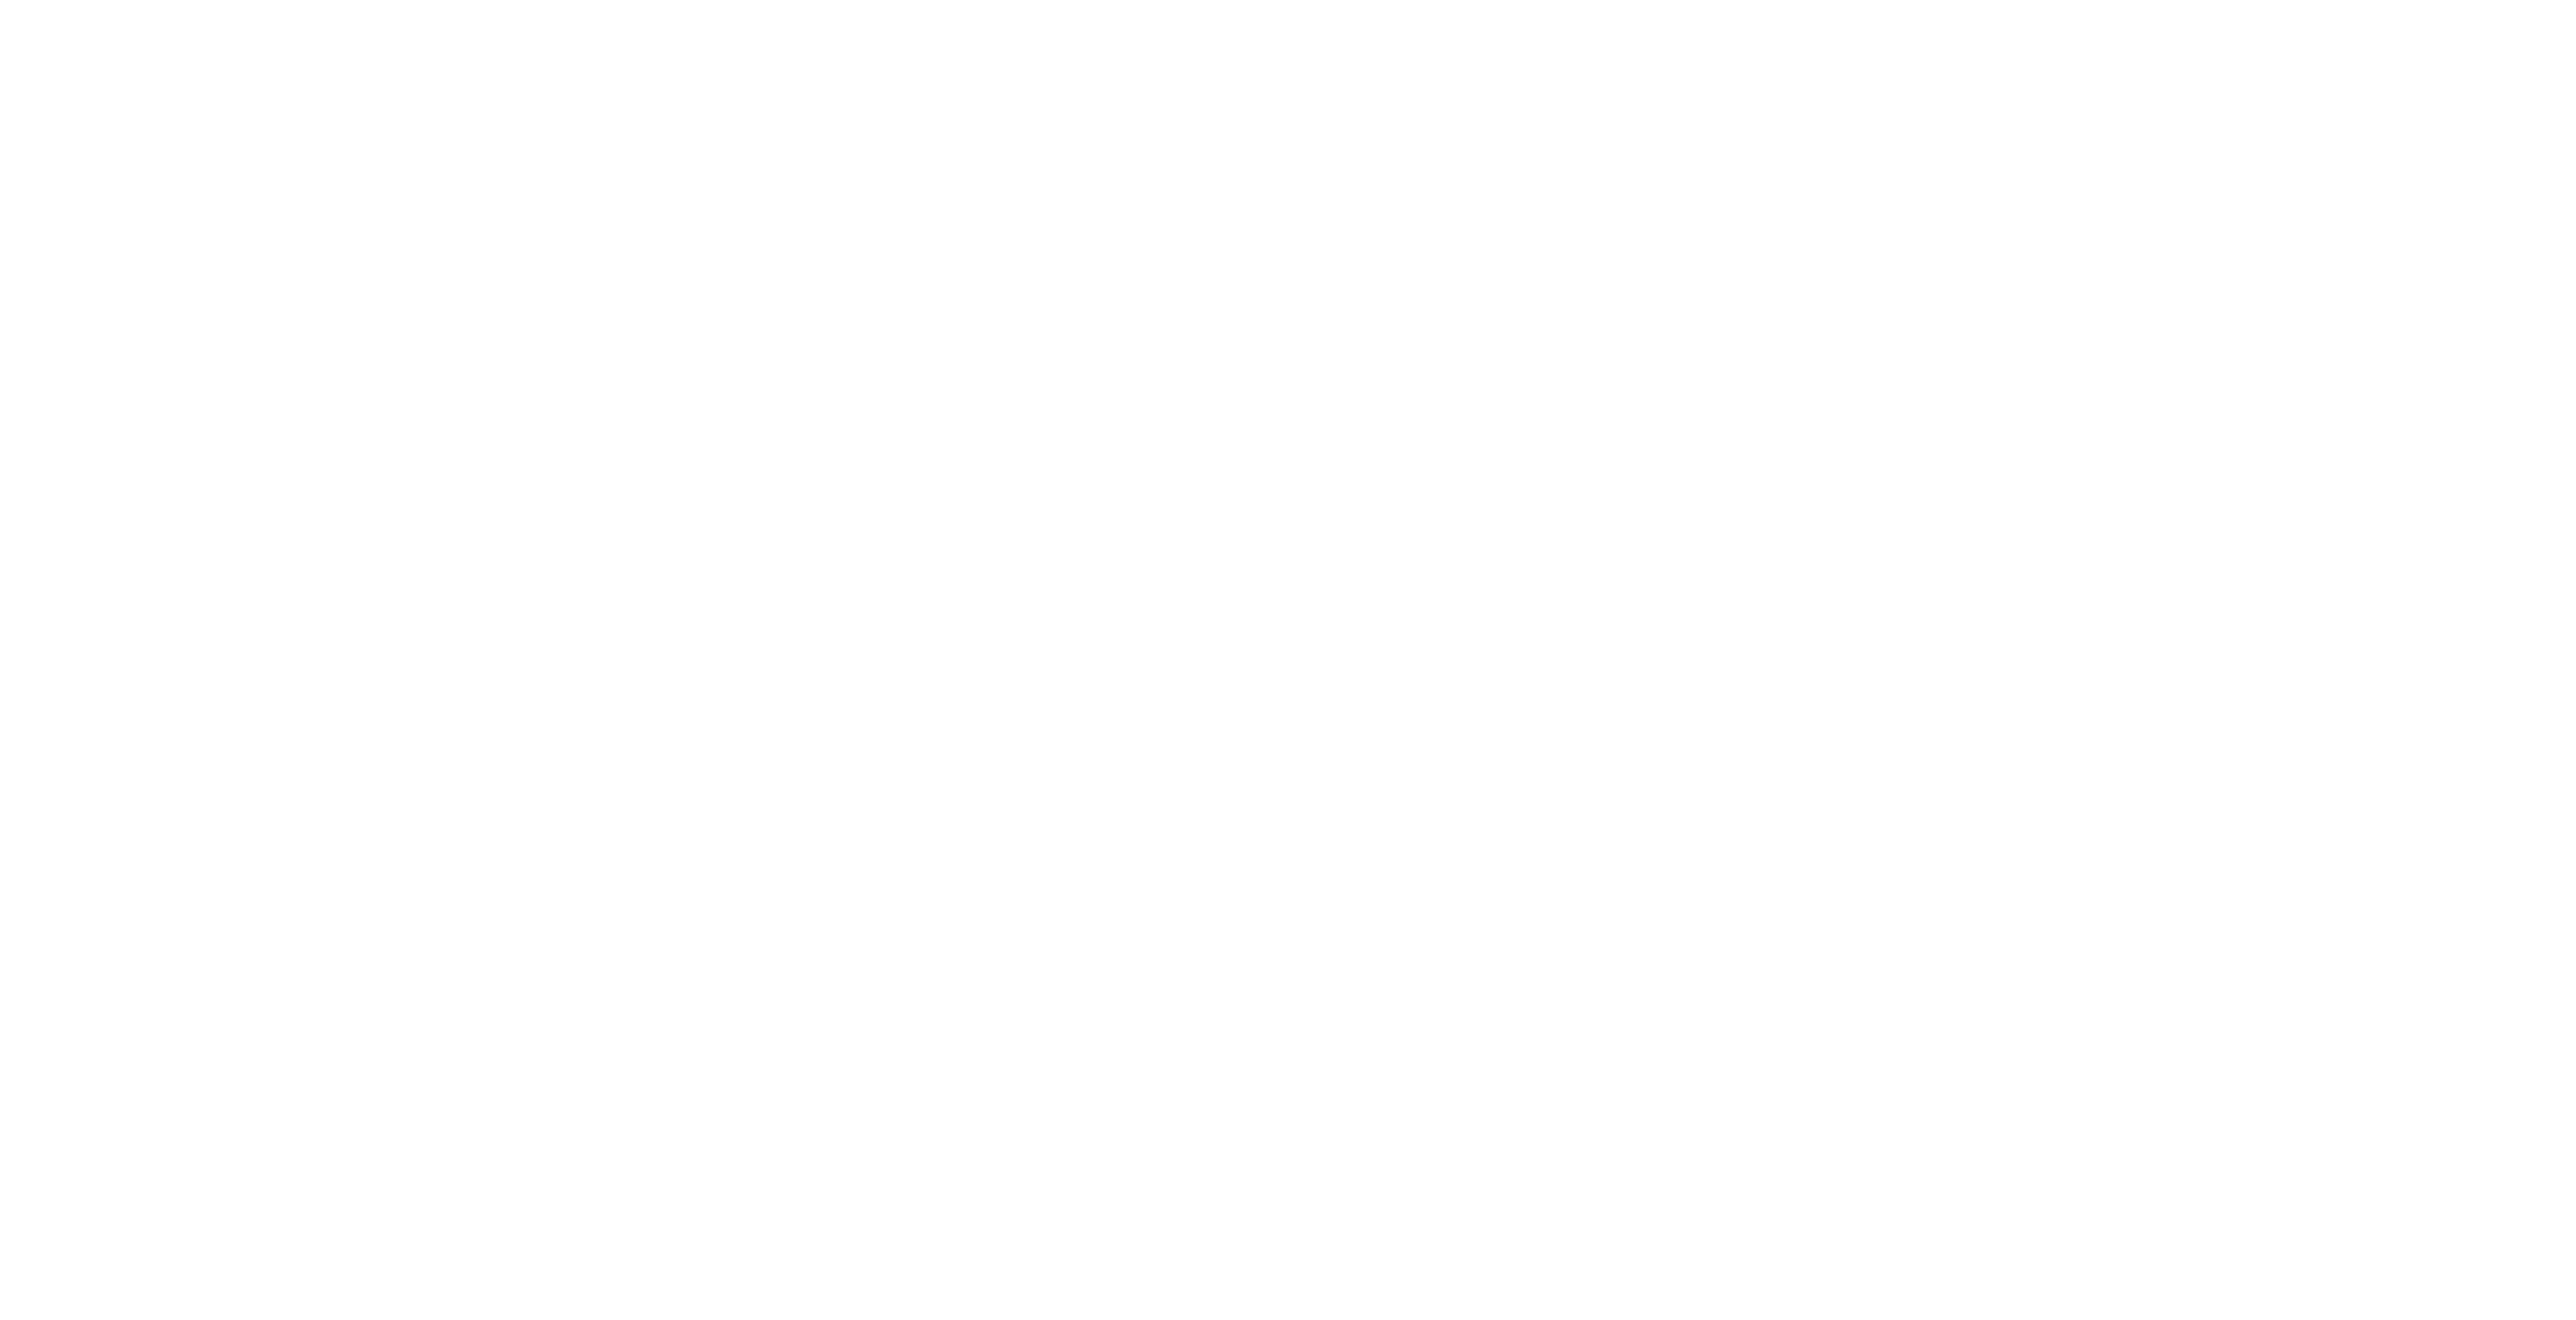 Collegium Alba 